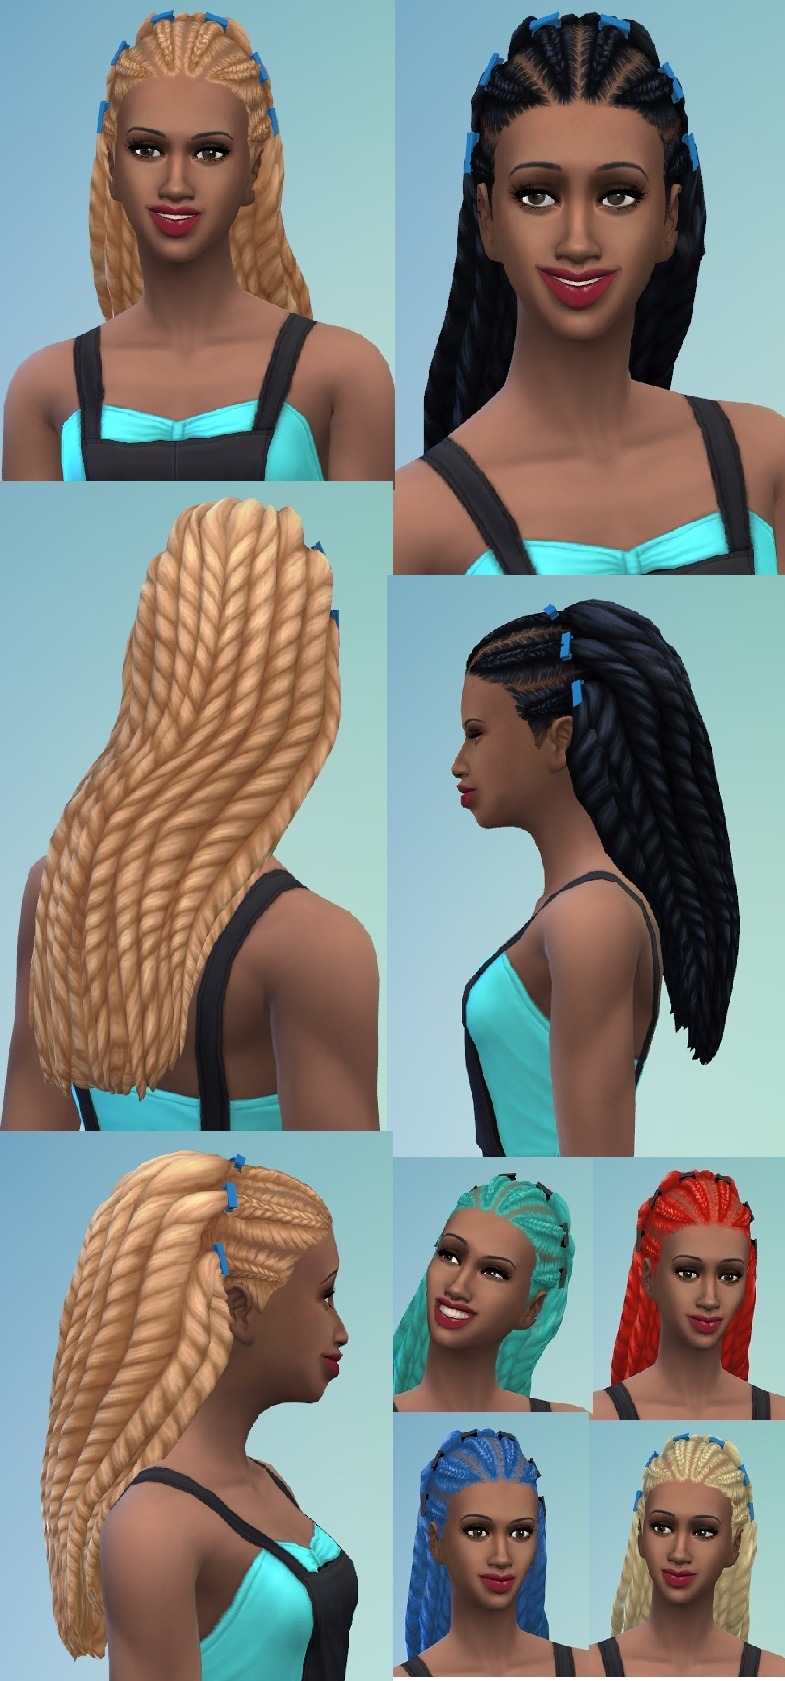 Sims blender